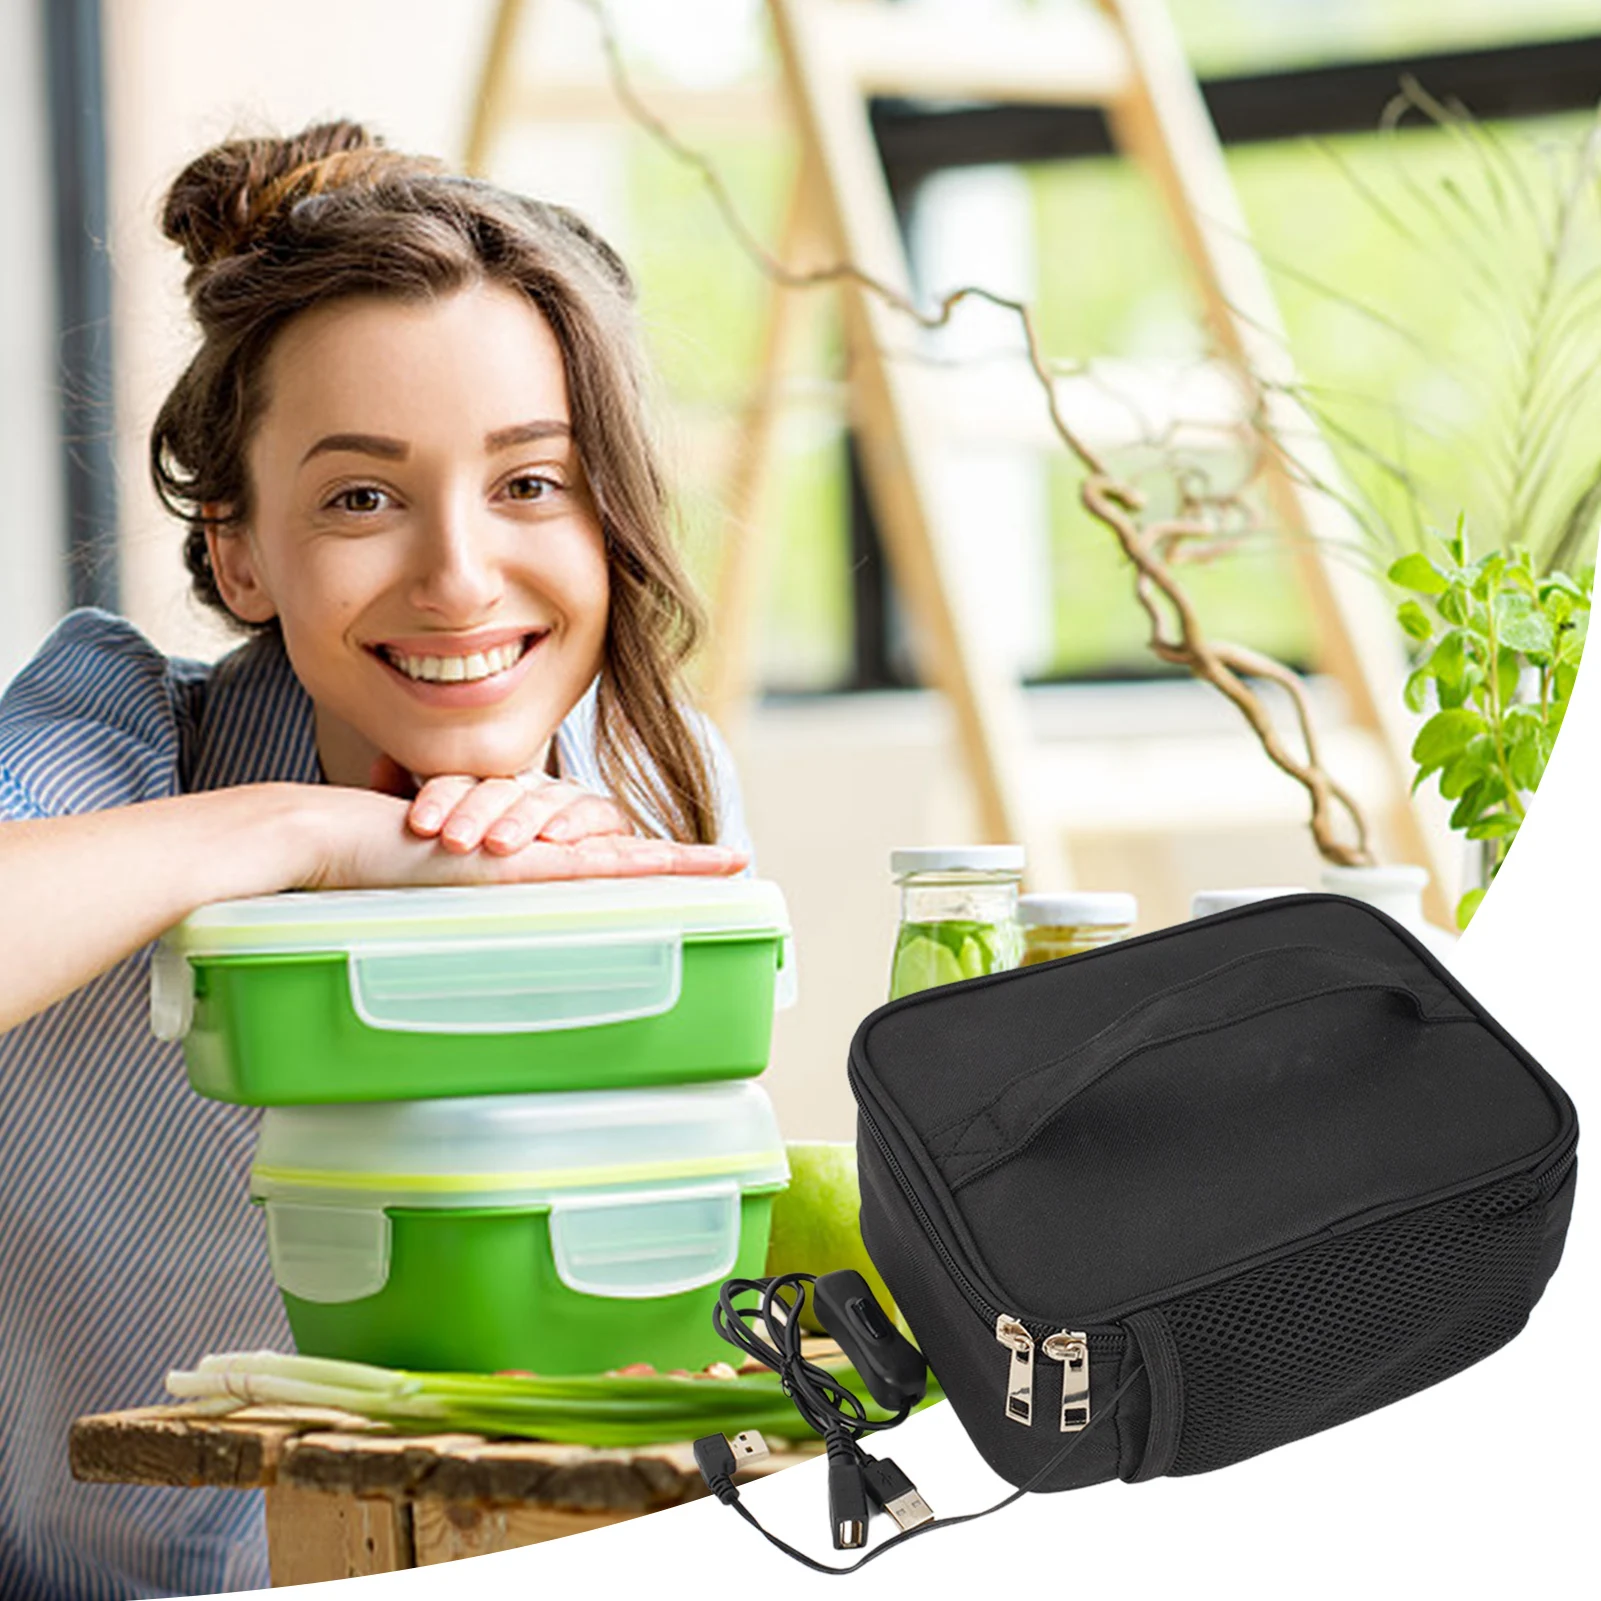 https://ae01.alicdn.com/kf/S7a087eb0242a4d28b7156ffb6ec140a2F/Heated-Lunch-Bag-USB-Lunch-Bag-Warmer-USB-Plug-Lunch-Warming-Tote-Heating-Lunch-Box-Heater.jpg